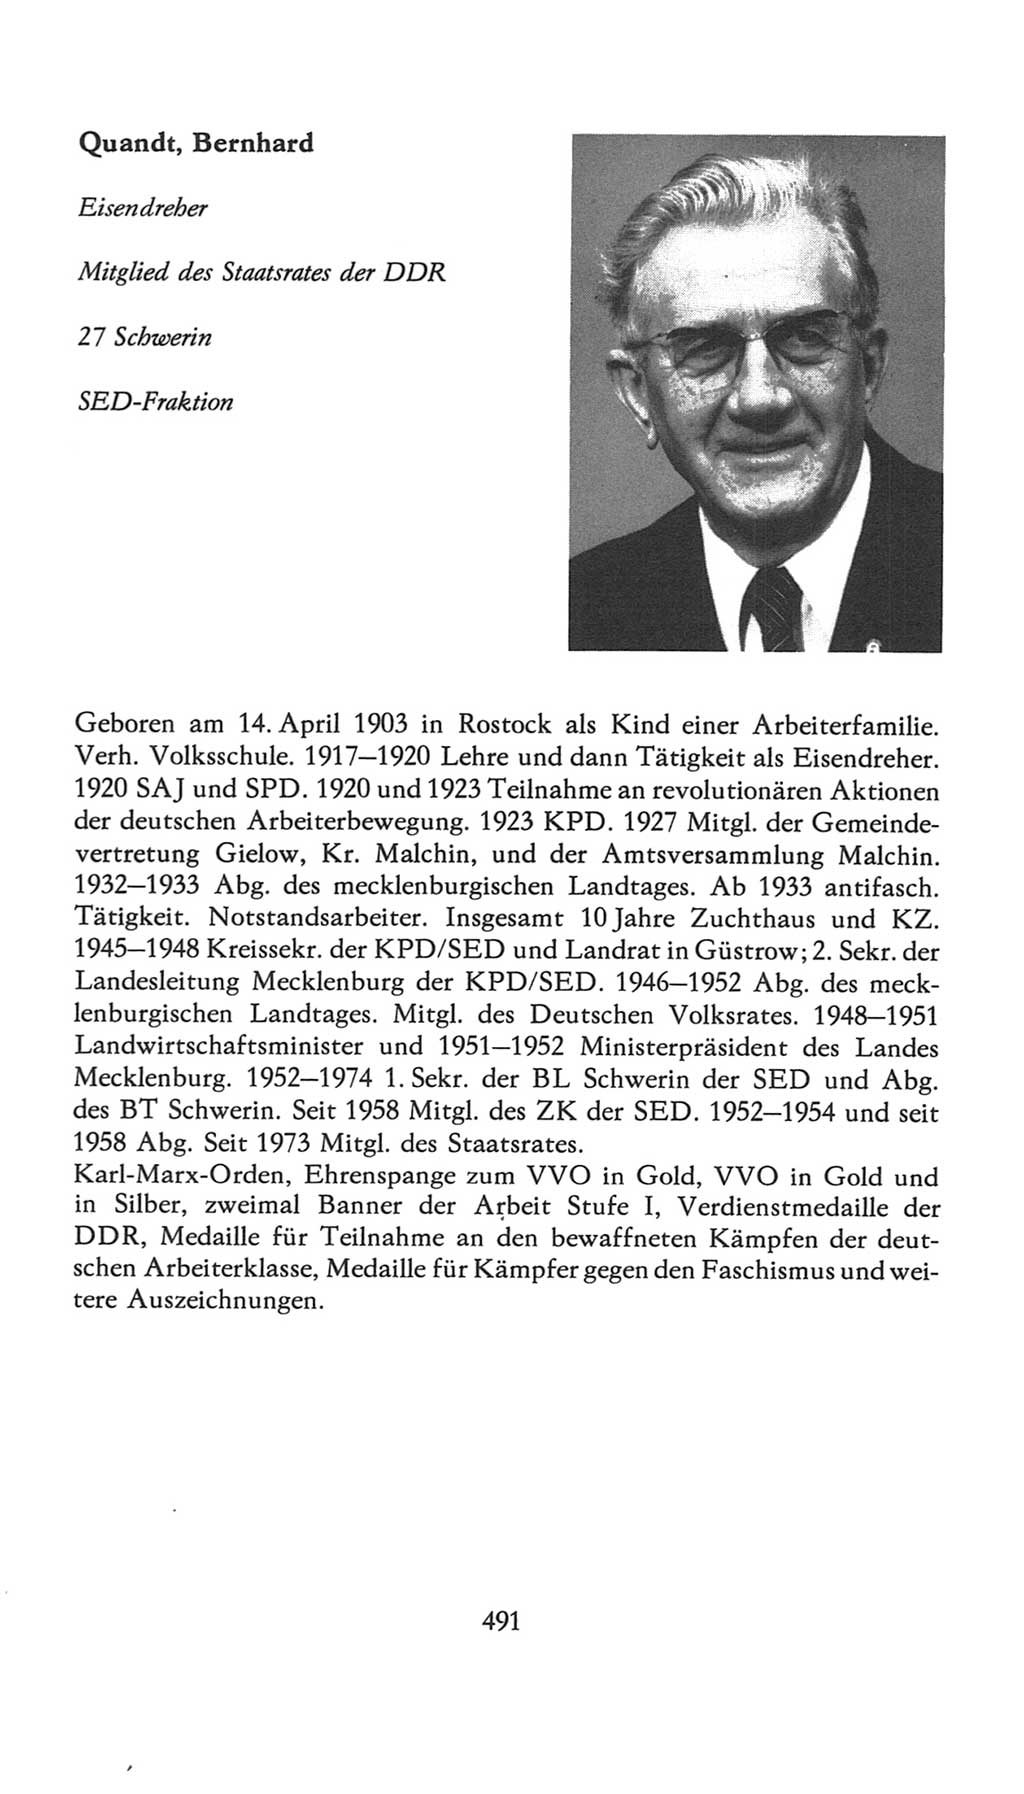 Volkskammer (VK) der Deutschen Demokratischen Republik (DDR), 7. Wahlperiode 1976-1981, Seite 491 (VK. DDR 7. WP. 1976-1981, S. 491)